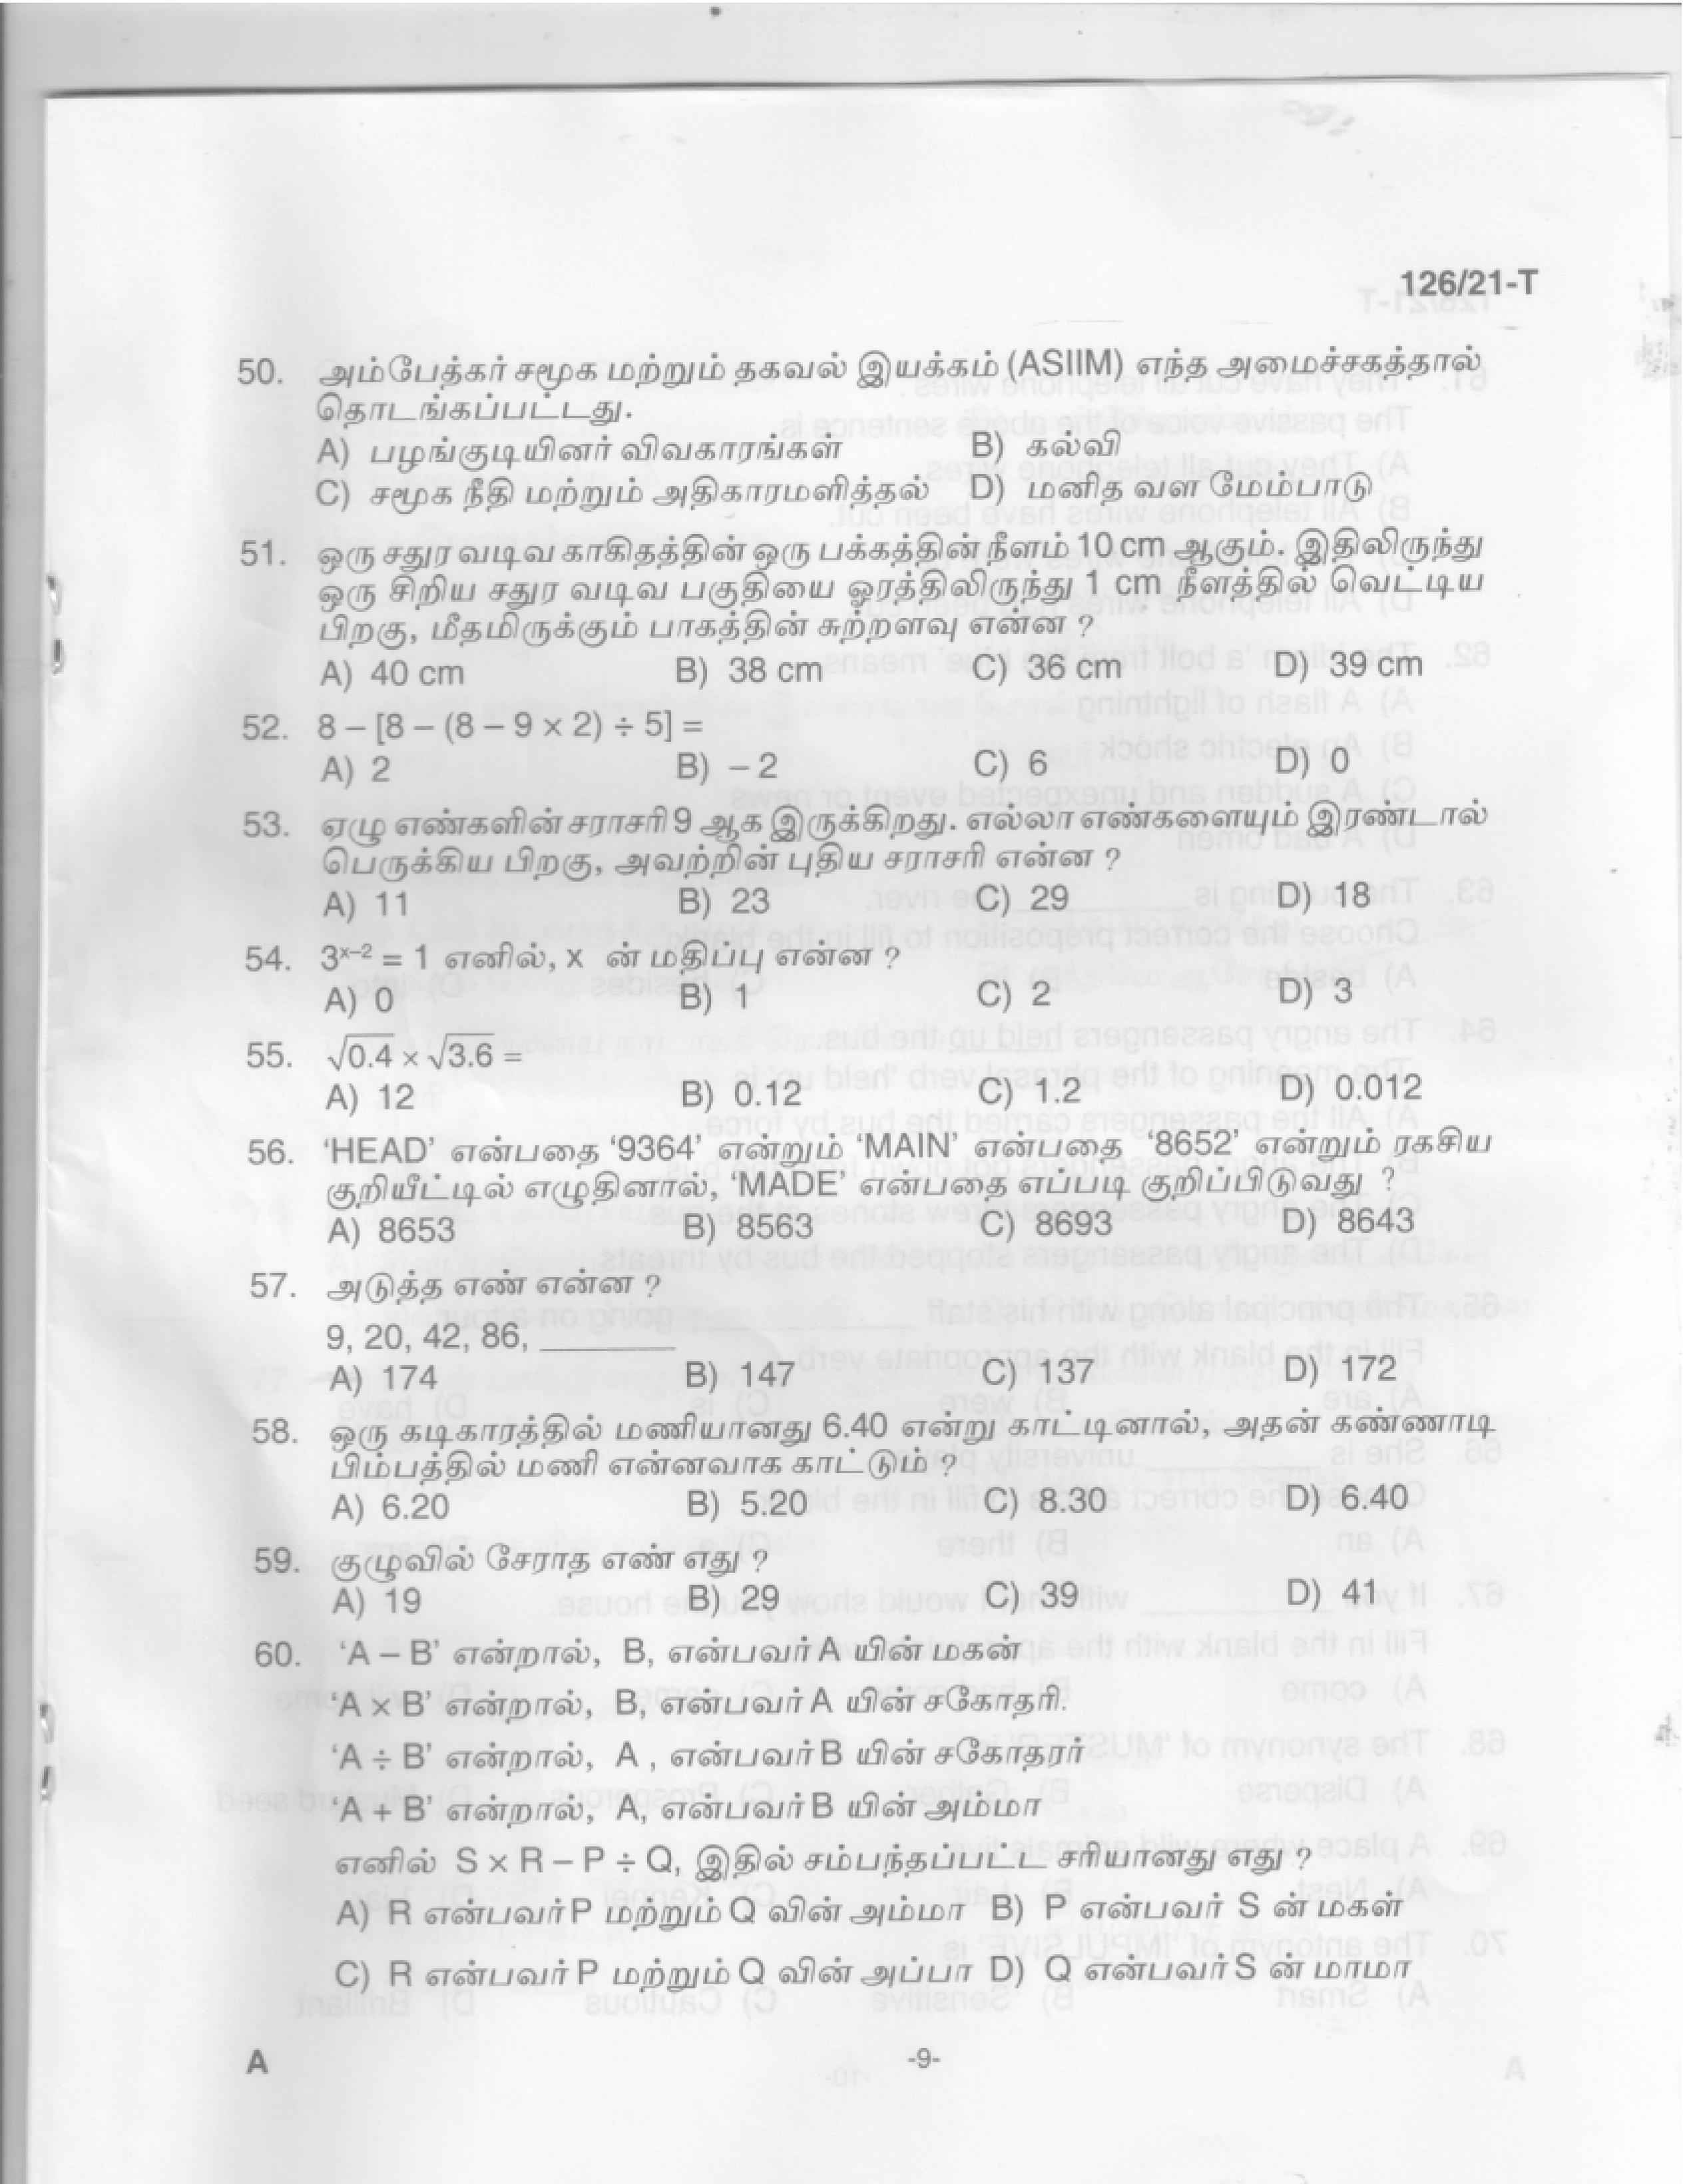 Upto SSLC Level Main Exam Assistant Compiler Tamil Exam 2021 Code 1262021 T 7